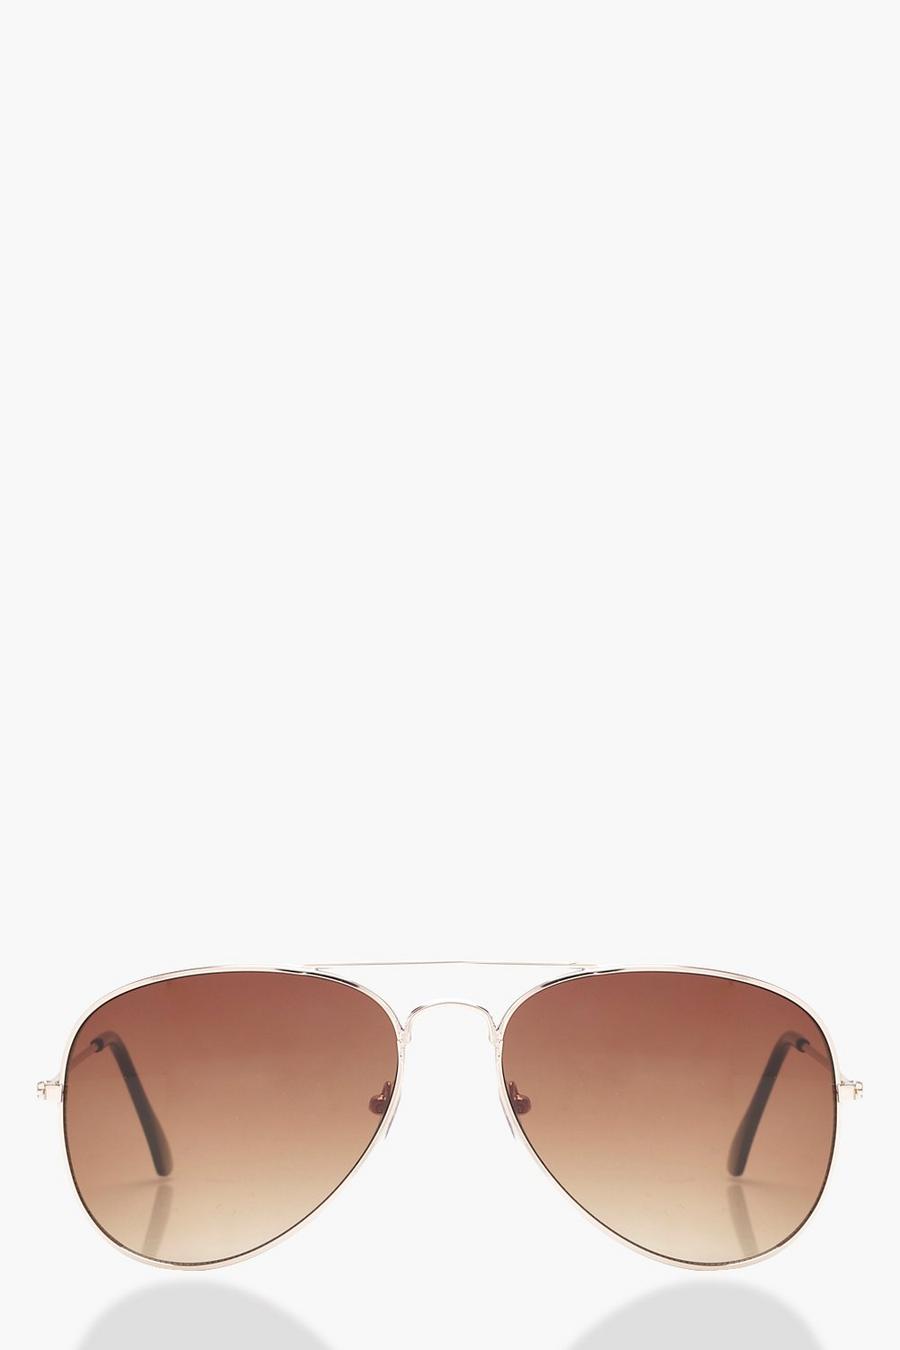 Gafas de sol estilo aviador con lentes marrones, Marrón